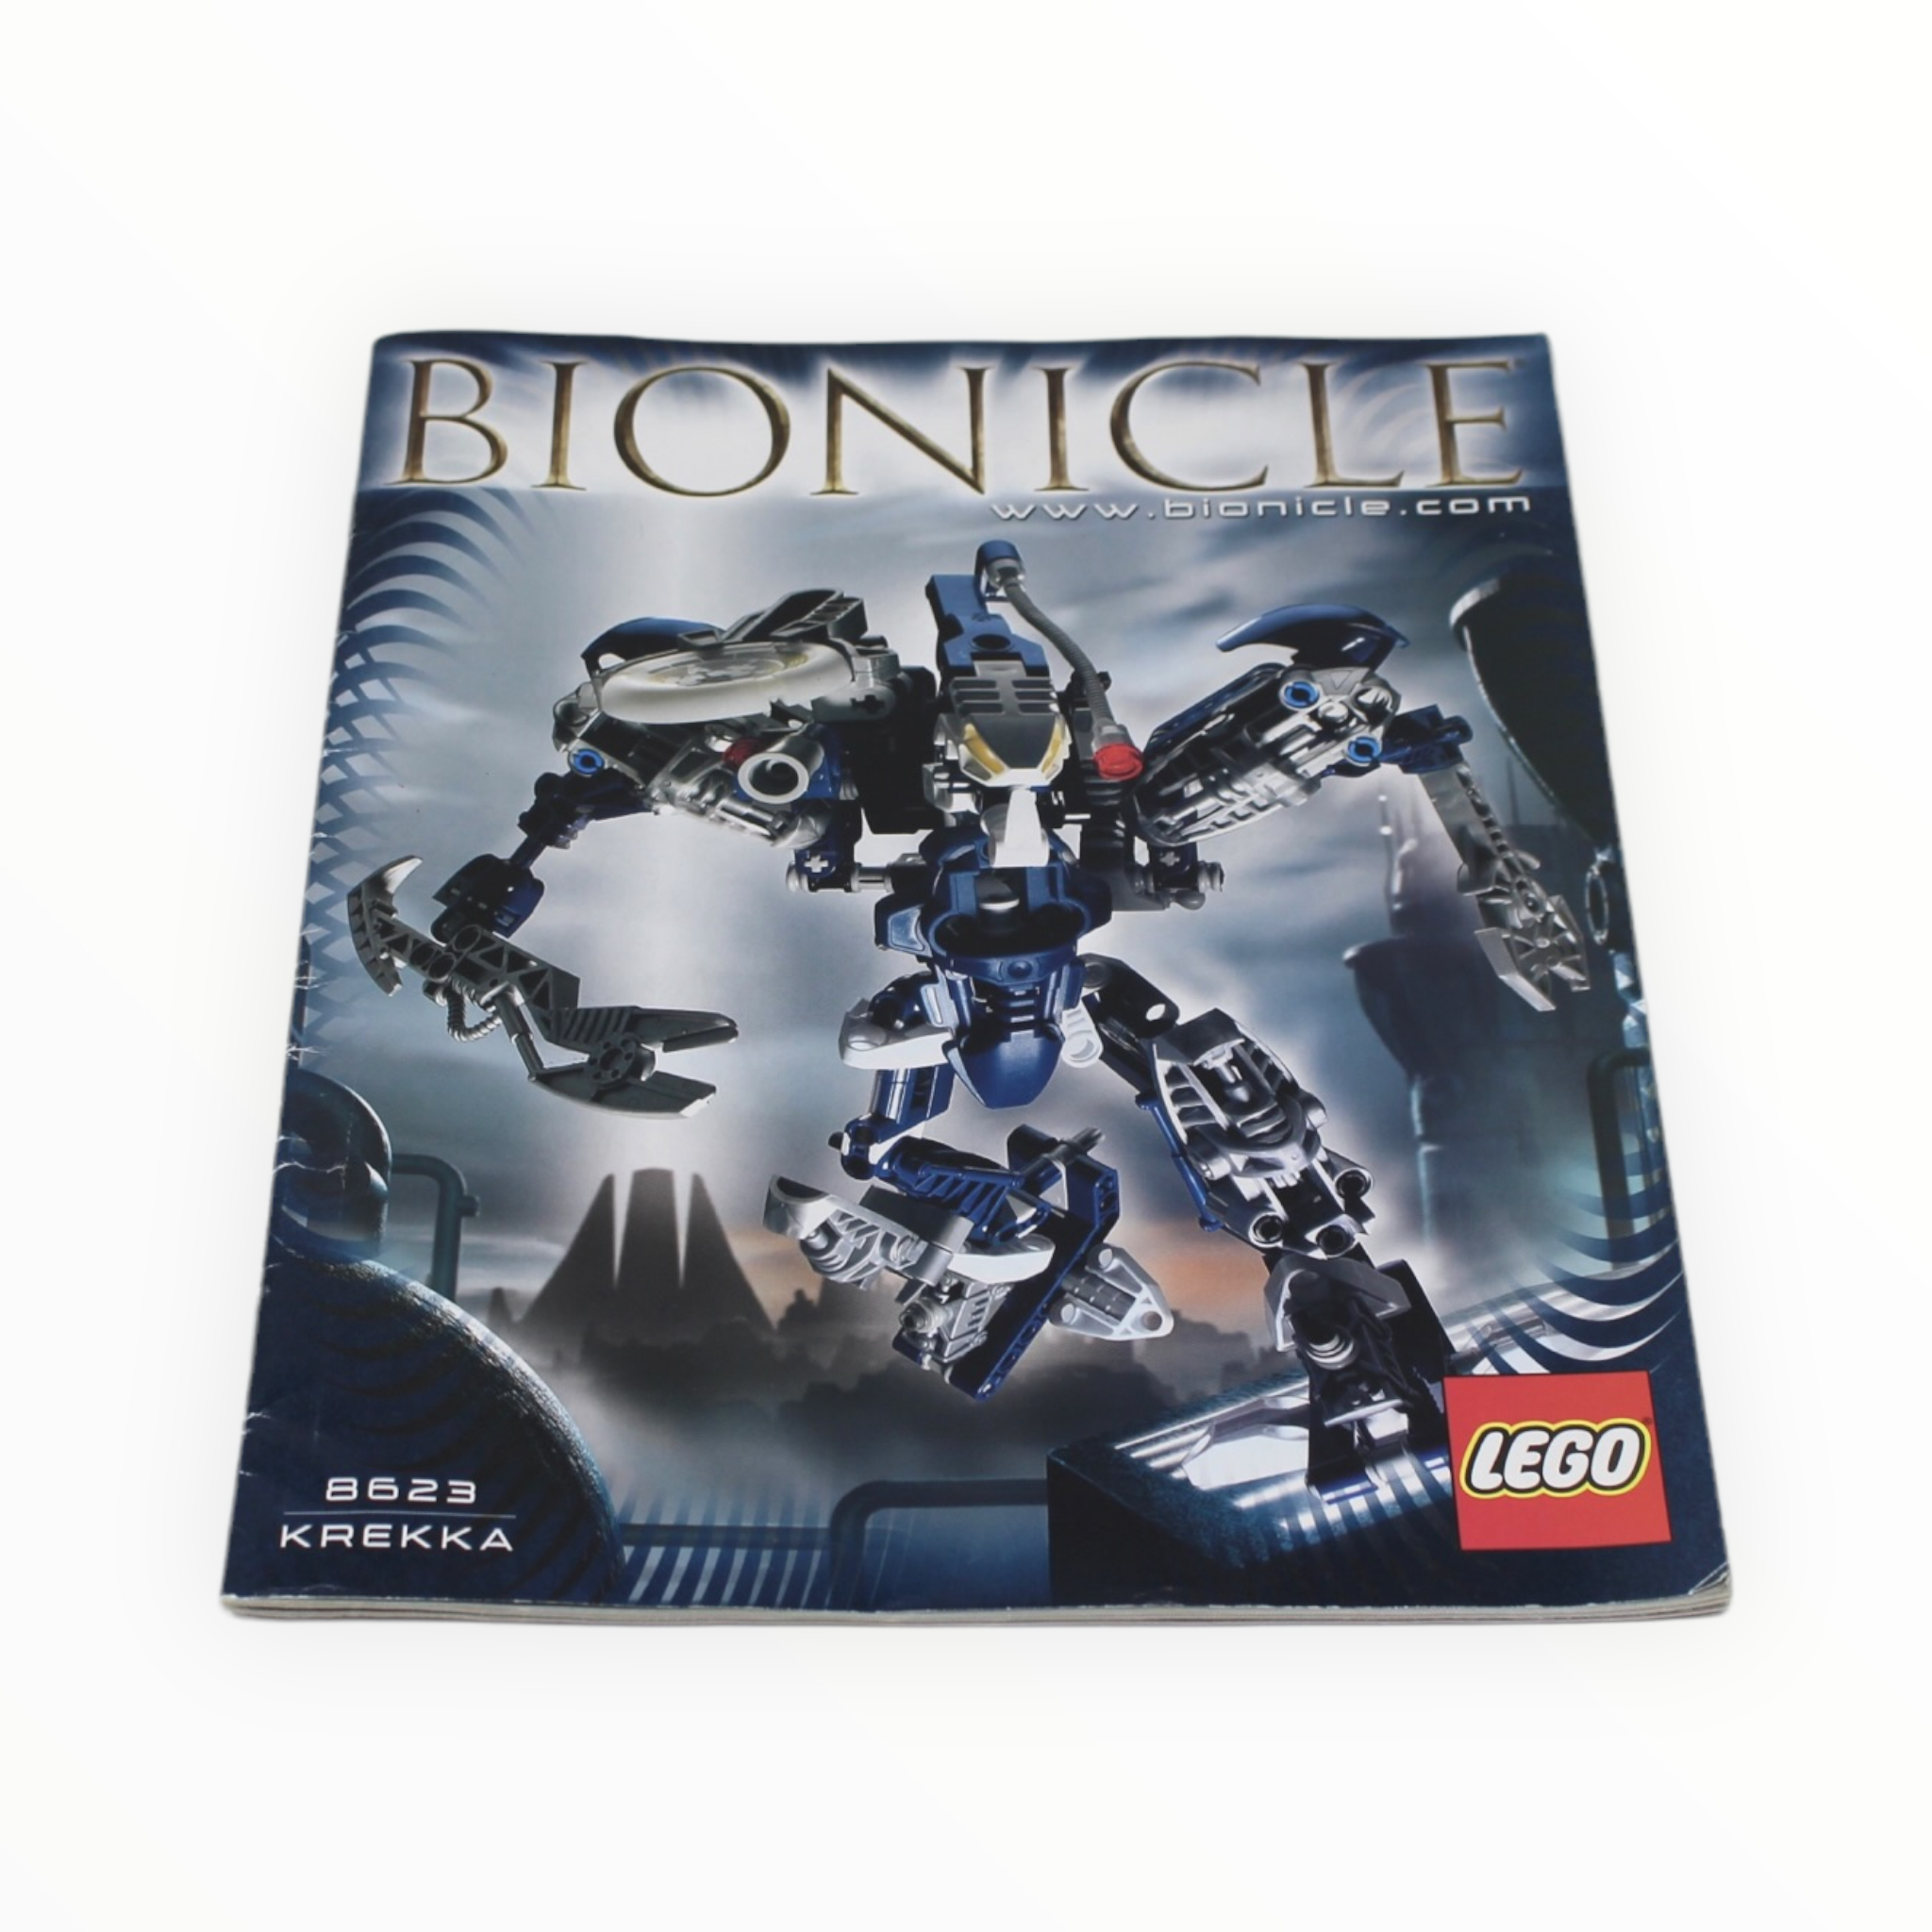 Used Set 8623 Bionicle Krekka